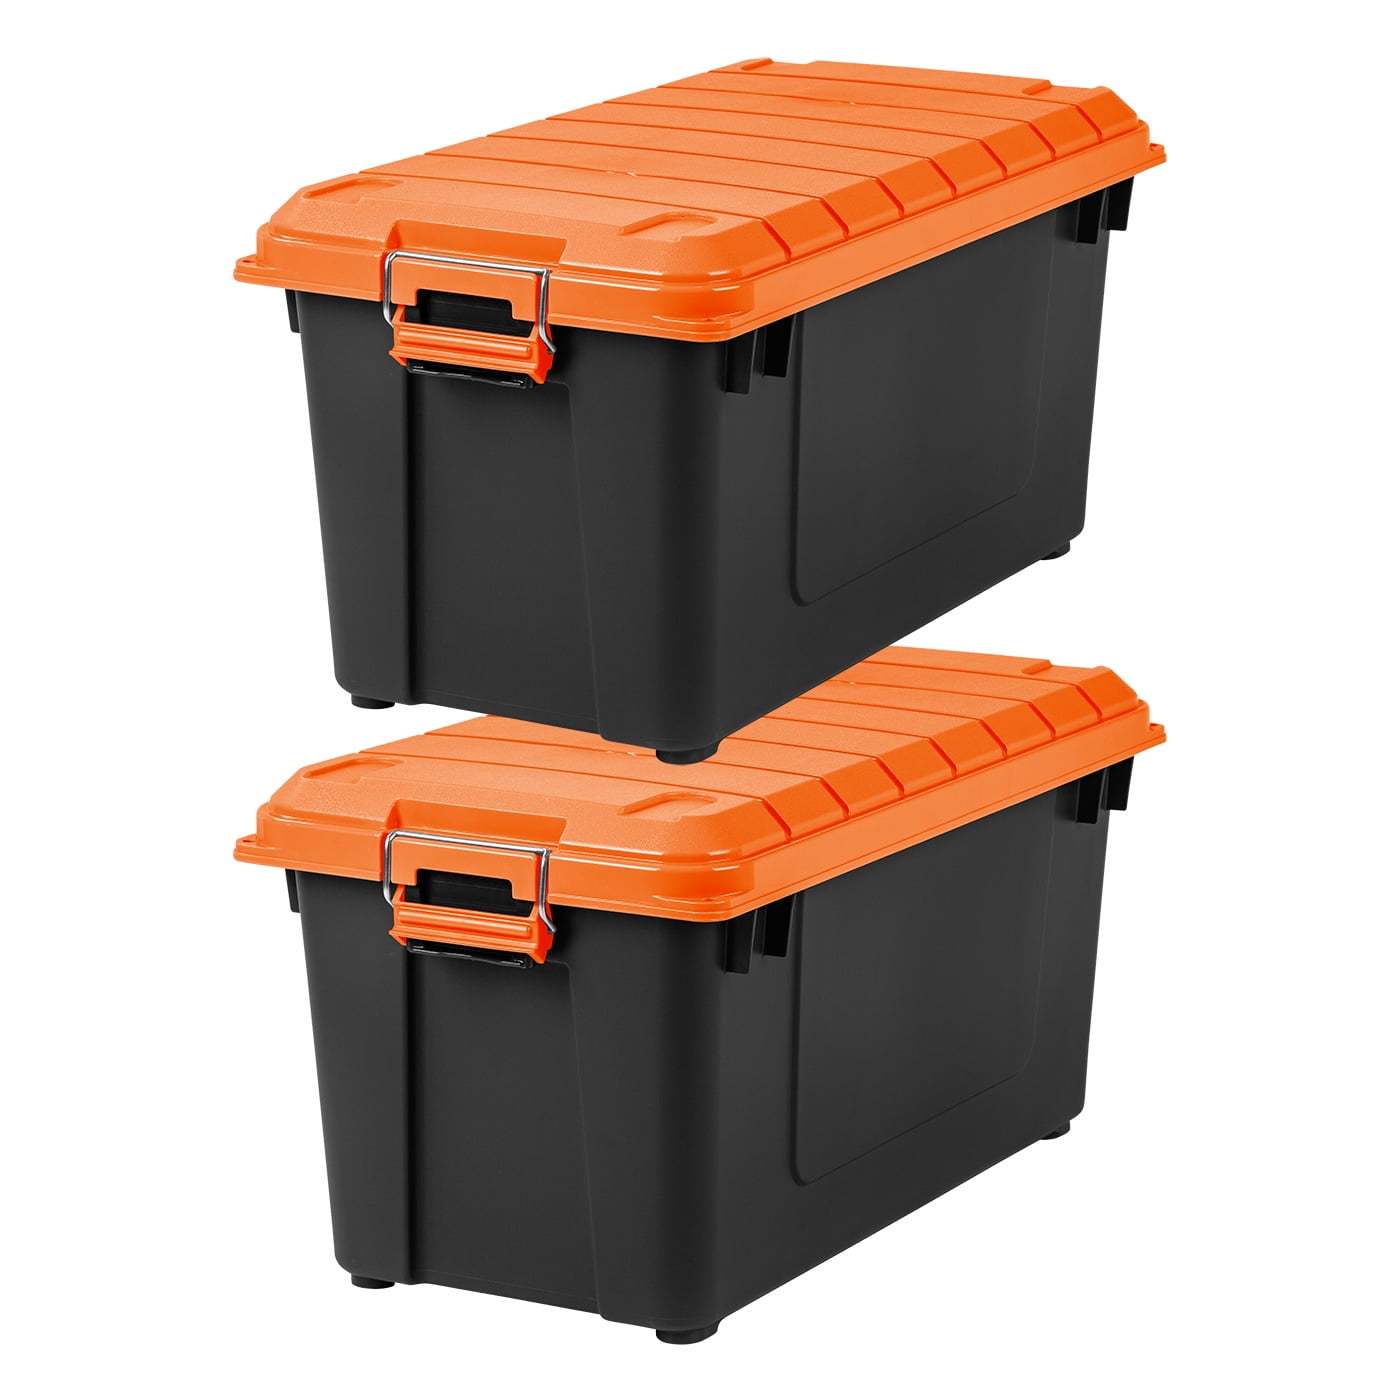 8-Bin Storage Bins Garage Rack System 2-Tier Orange Tool